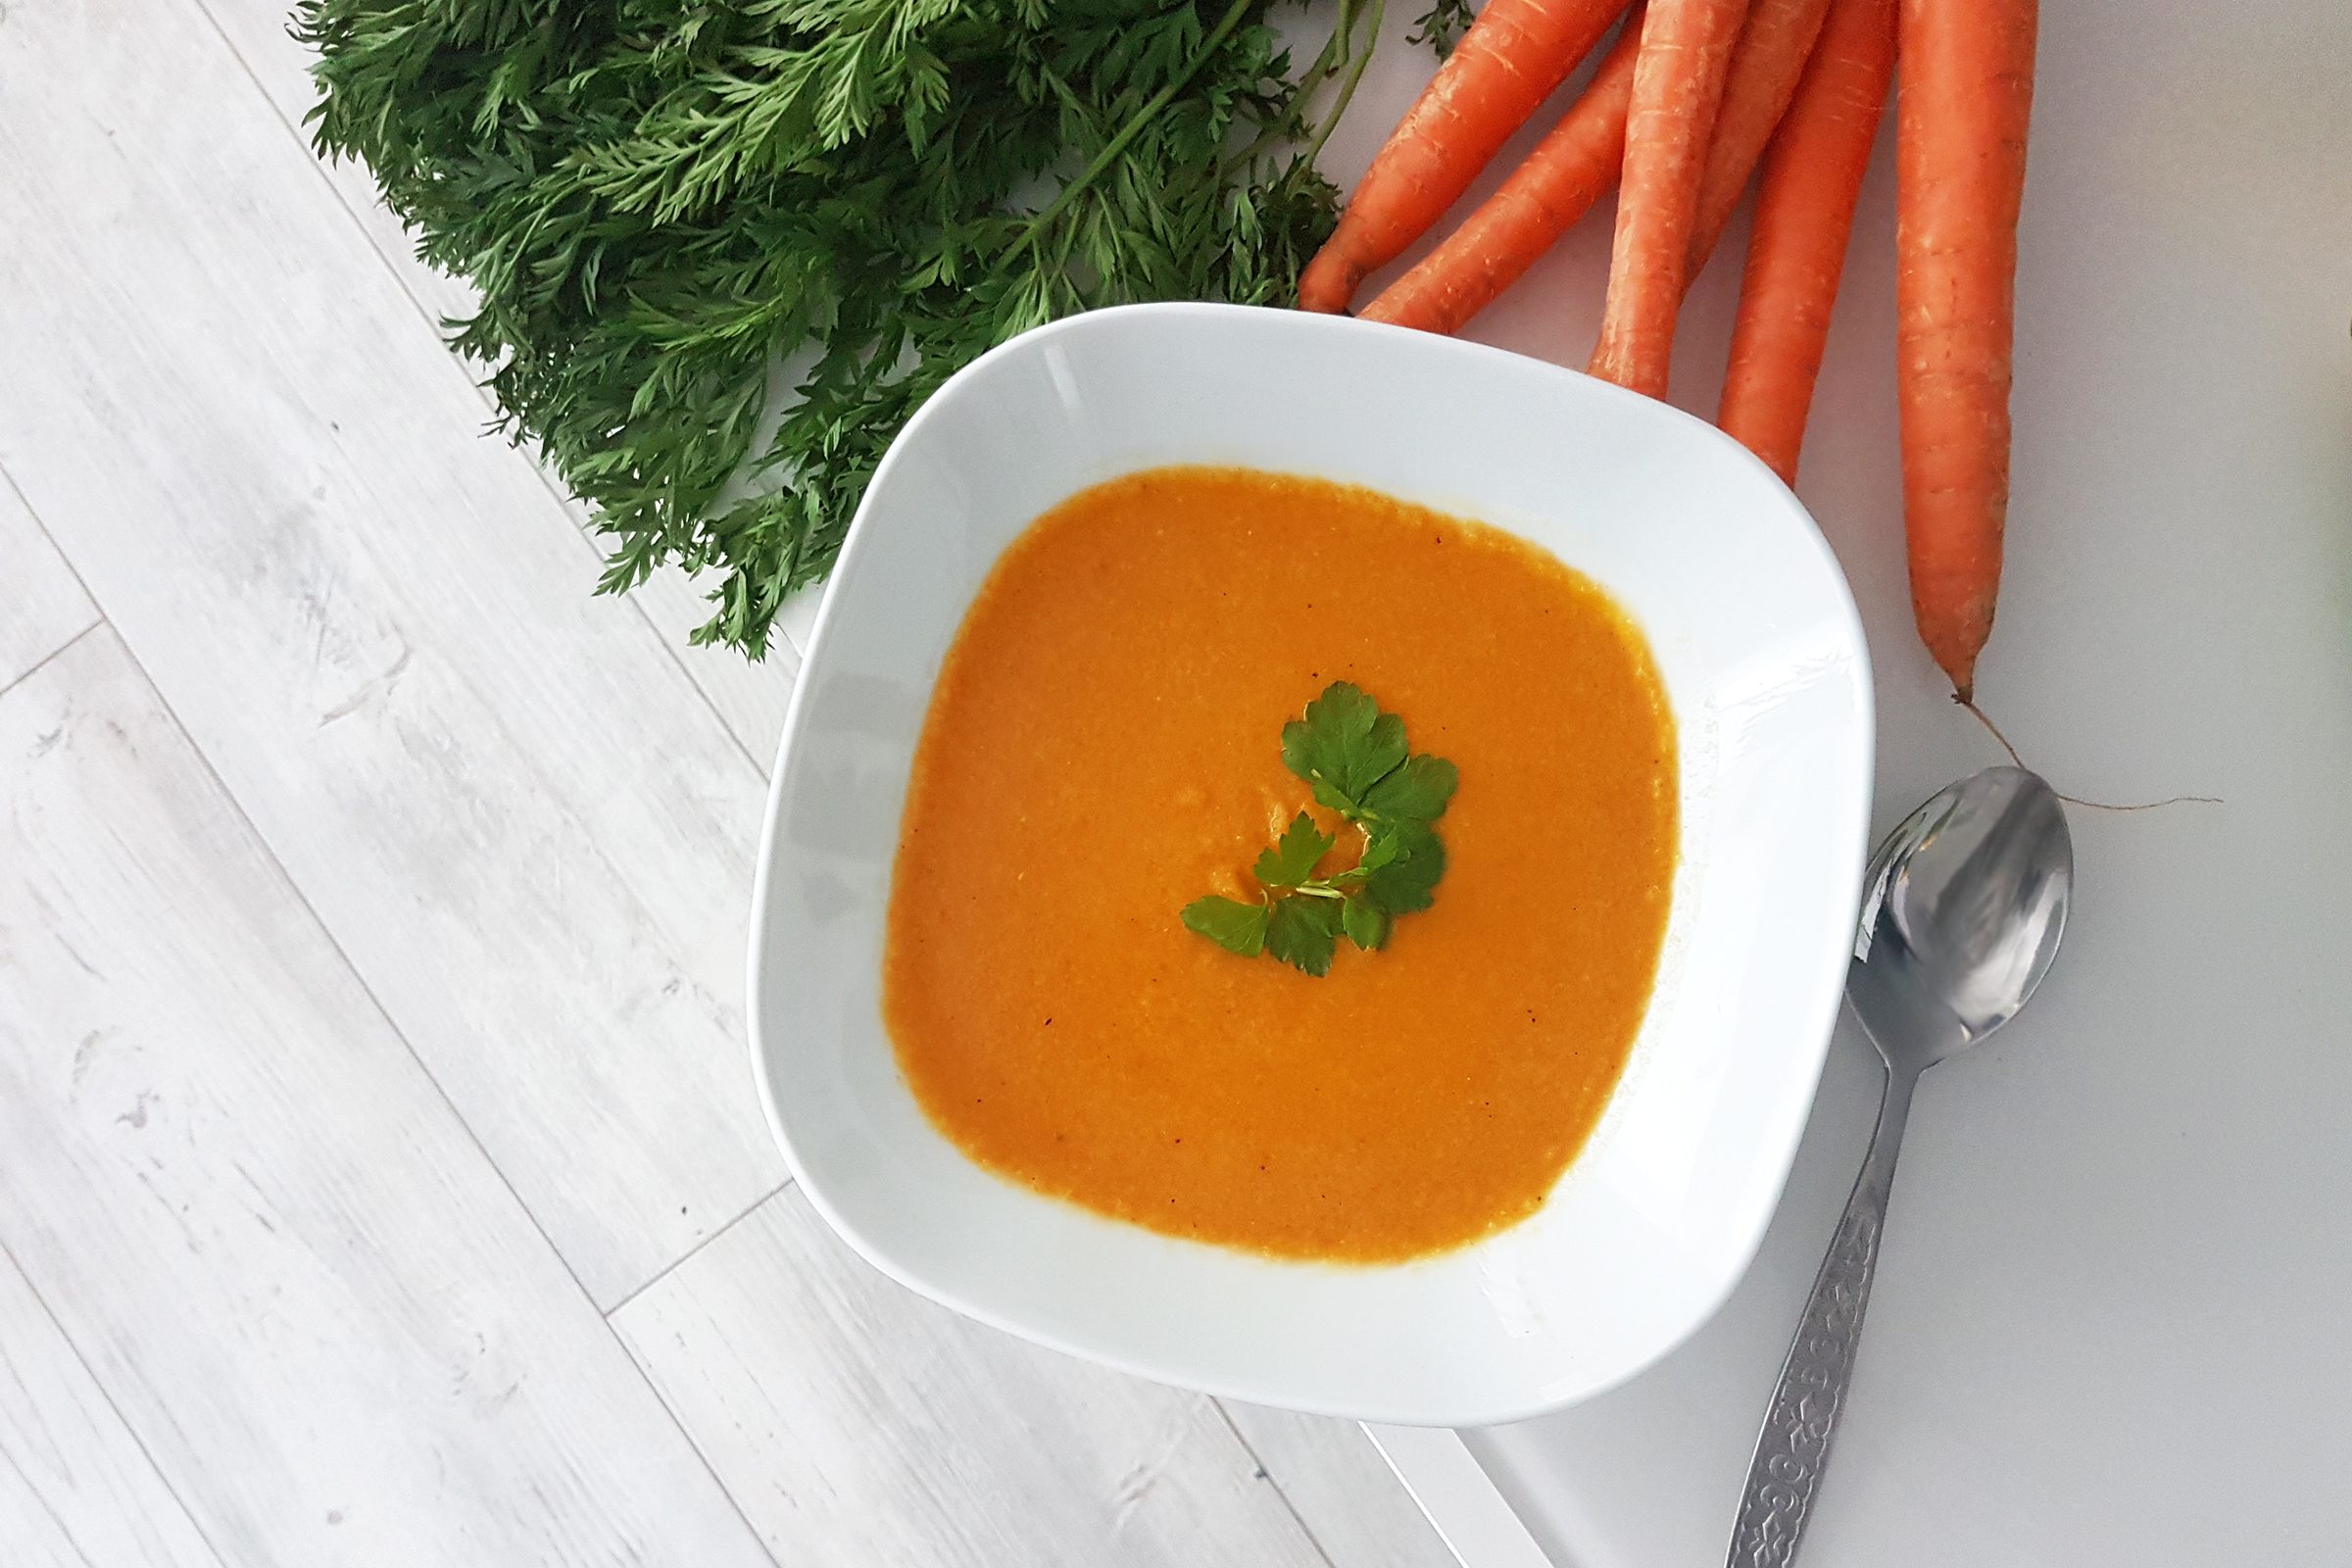 Smaczny i zdrowy obiad dla dzieci - zupa krem marchewkowy! 